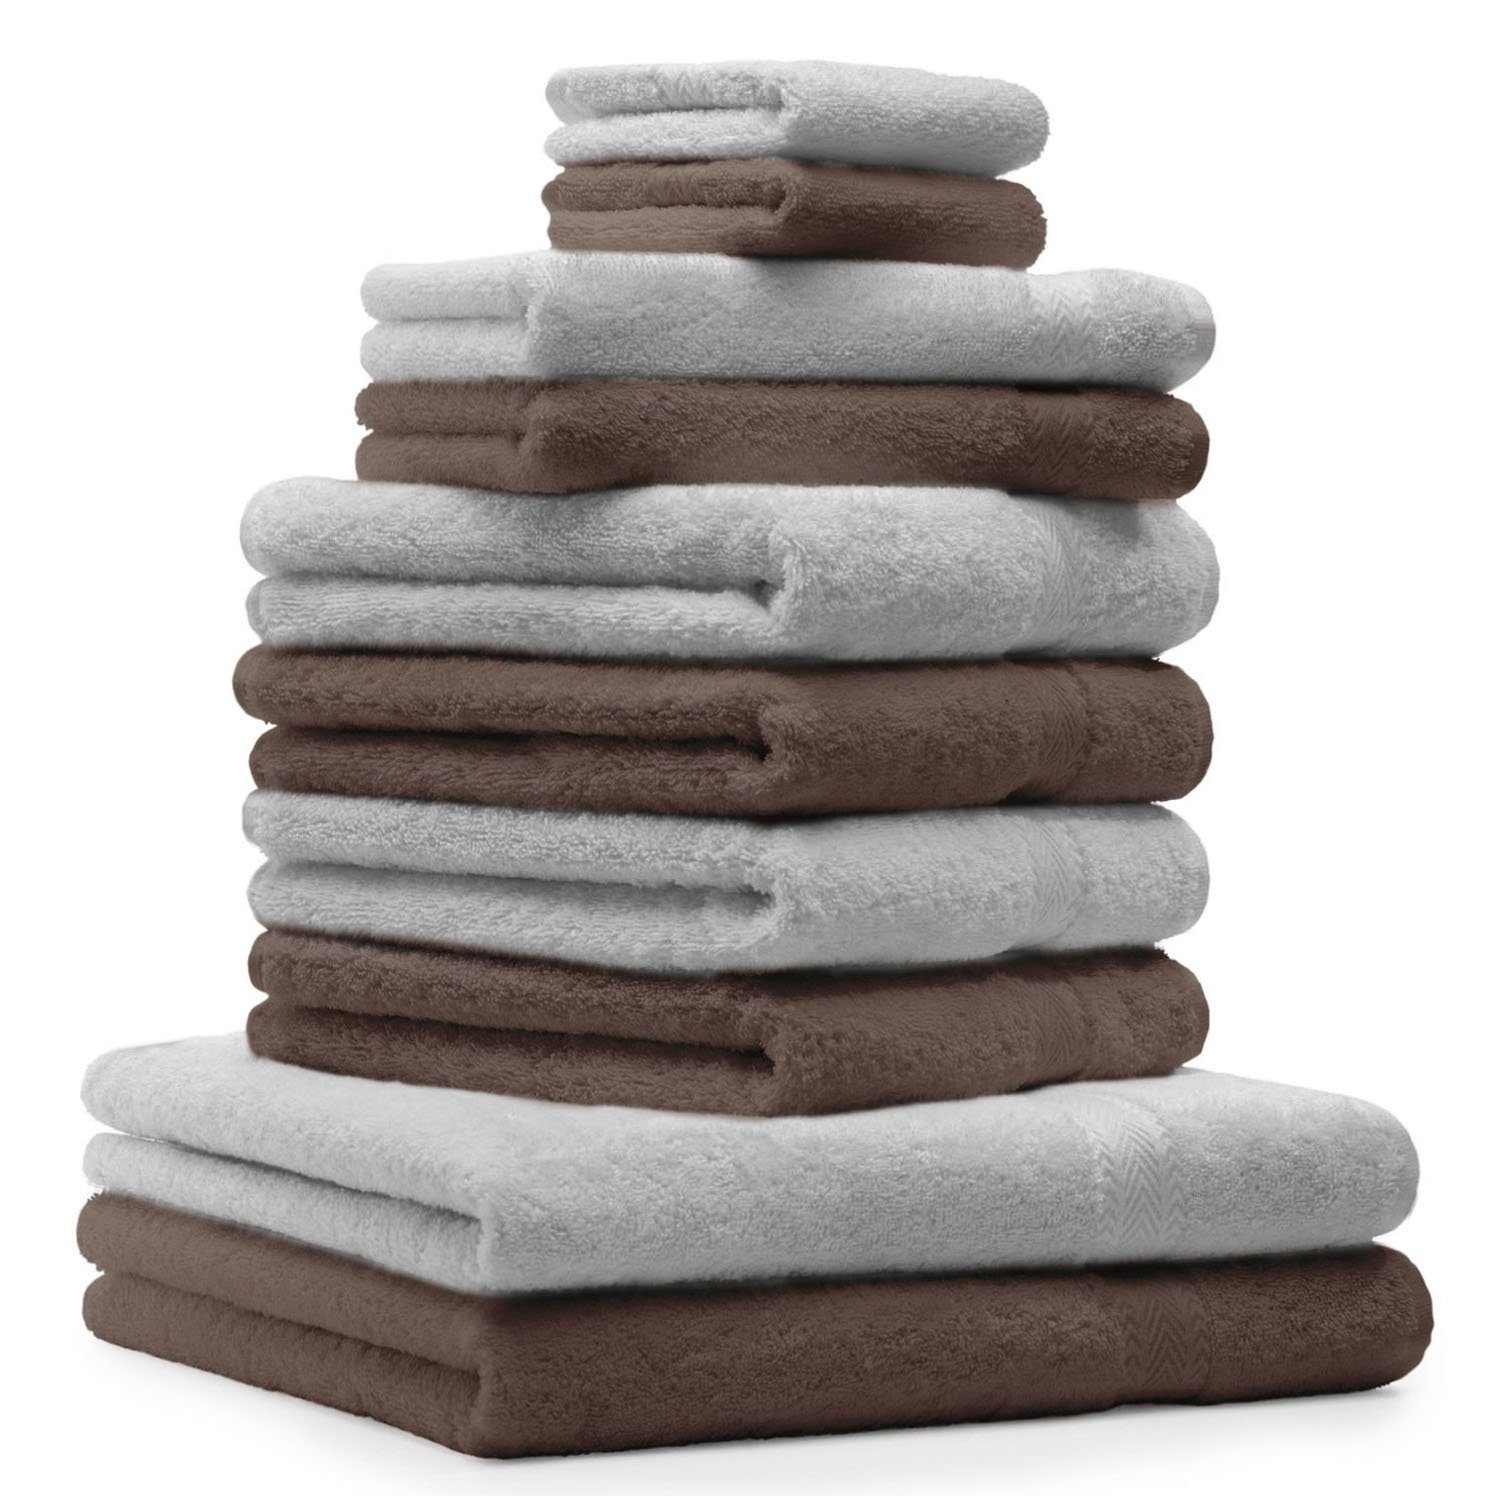 Betz Handtuch Set 10-TLG. Handtuch-Set Classic Farbe nussbraun und silbergrau, 100% Baumwolle